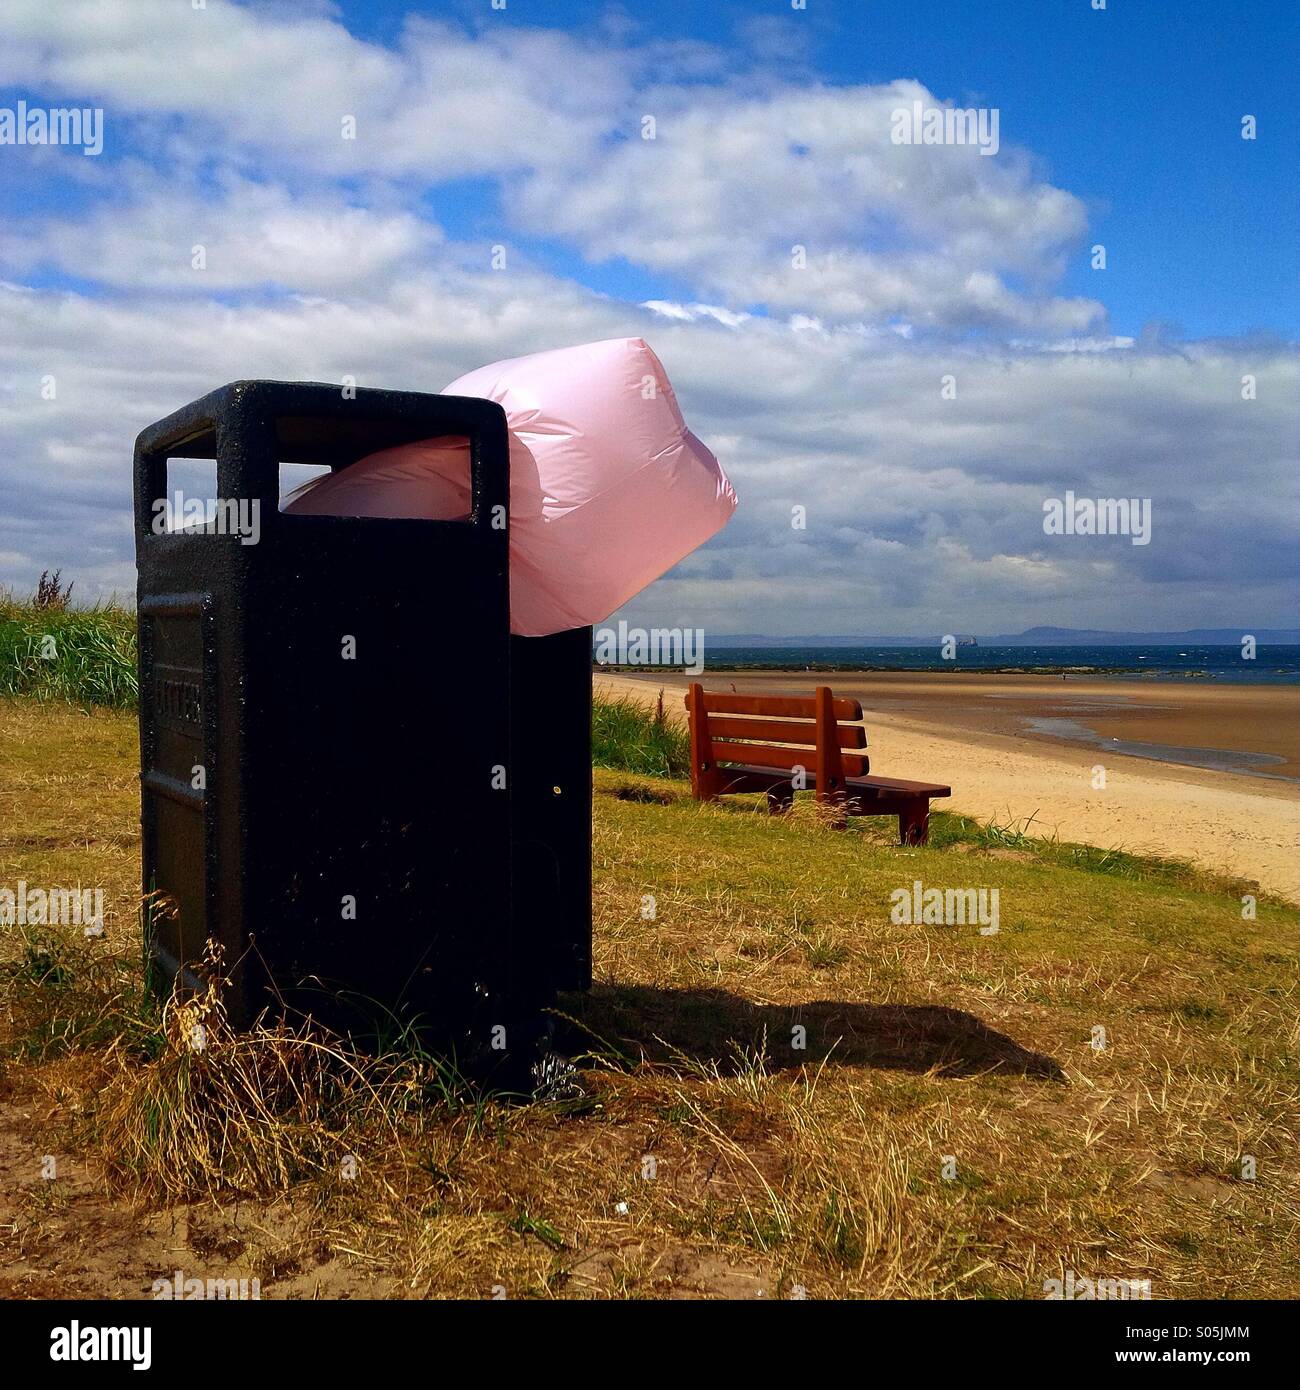 Sac poubelle rose Banque de photographies et d'images à haute résolution -  Alamy